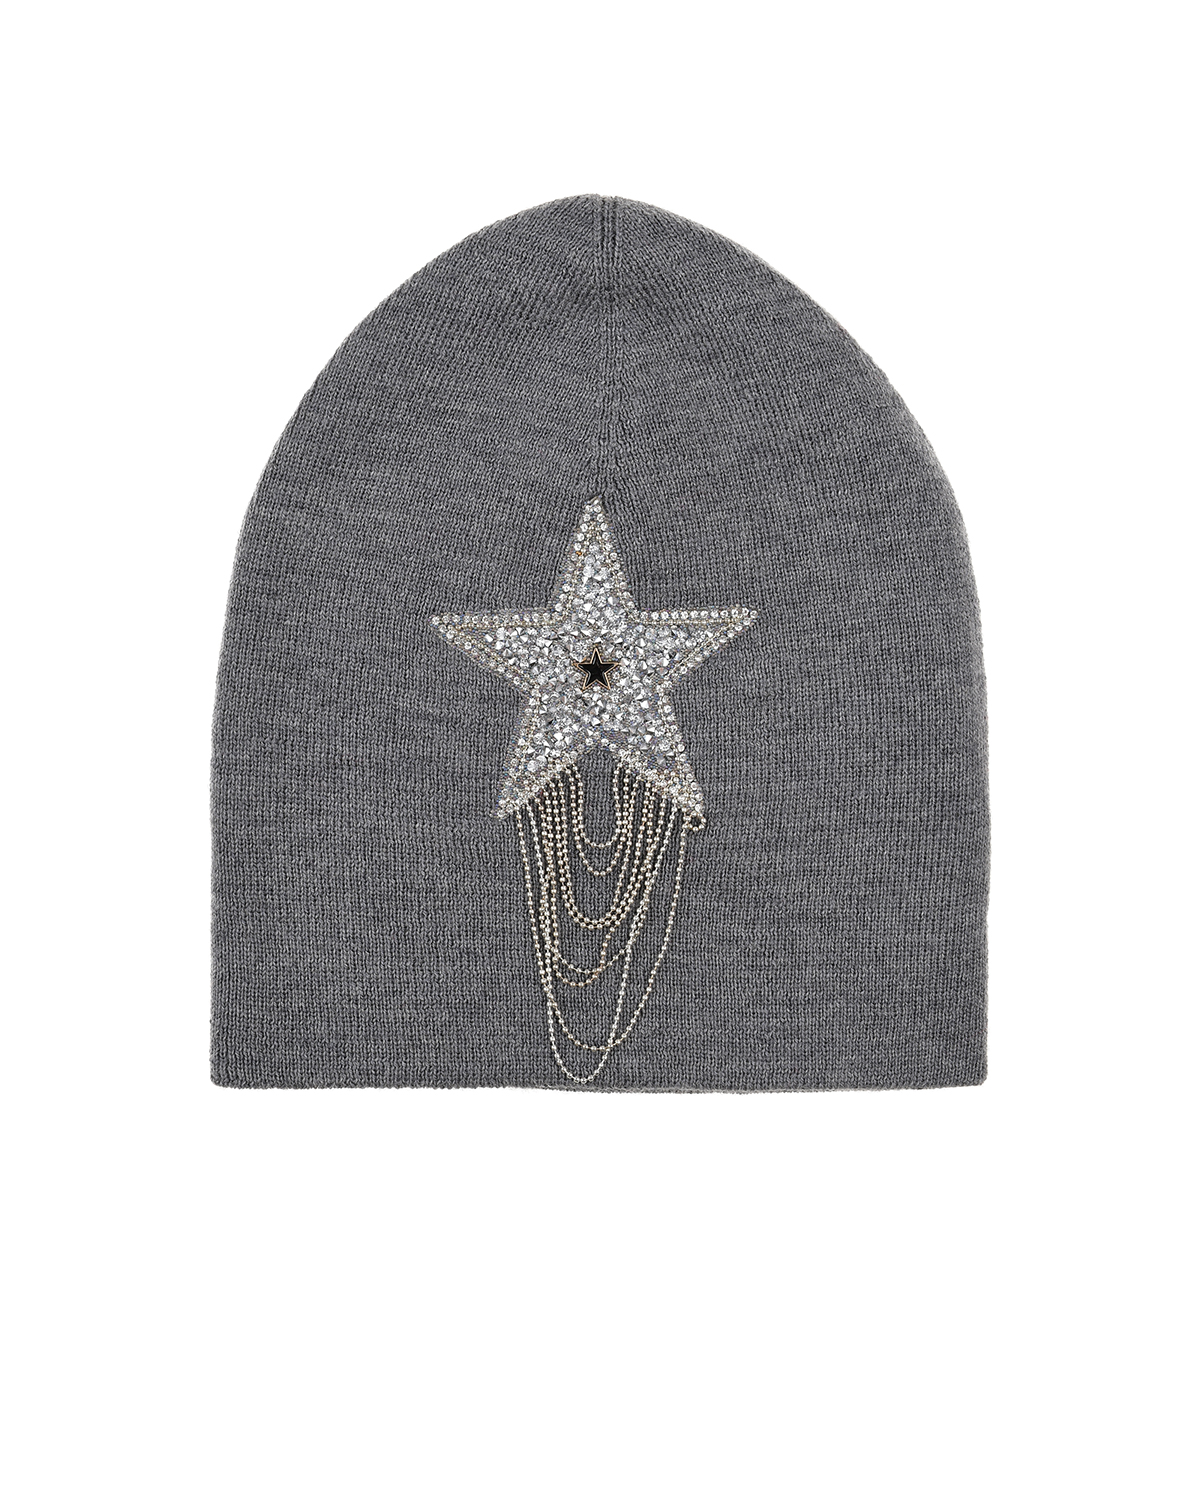 Серая шапка со звездой из стразов Regina детская, размер 55/57, цвет серый